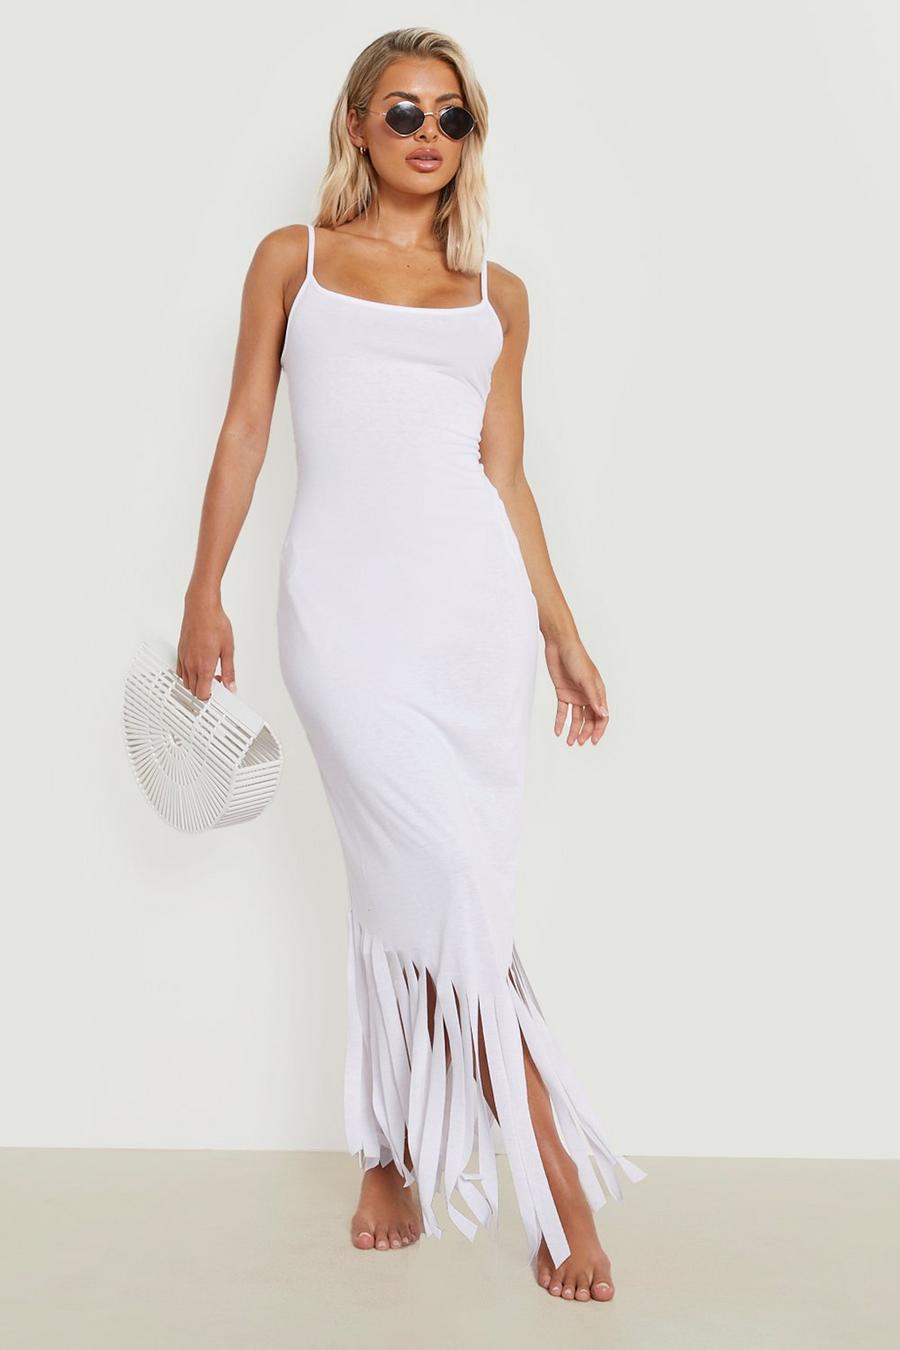 לבן bianco שמלת חוף מקסי עם כתפיות דקות ופרנזים